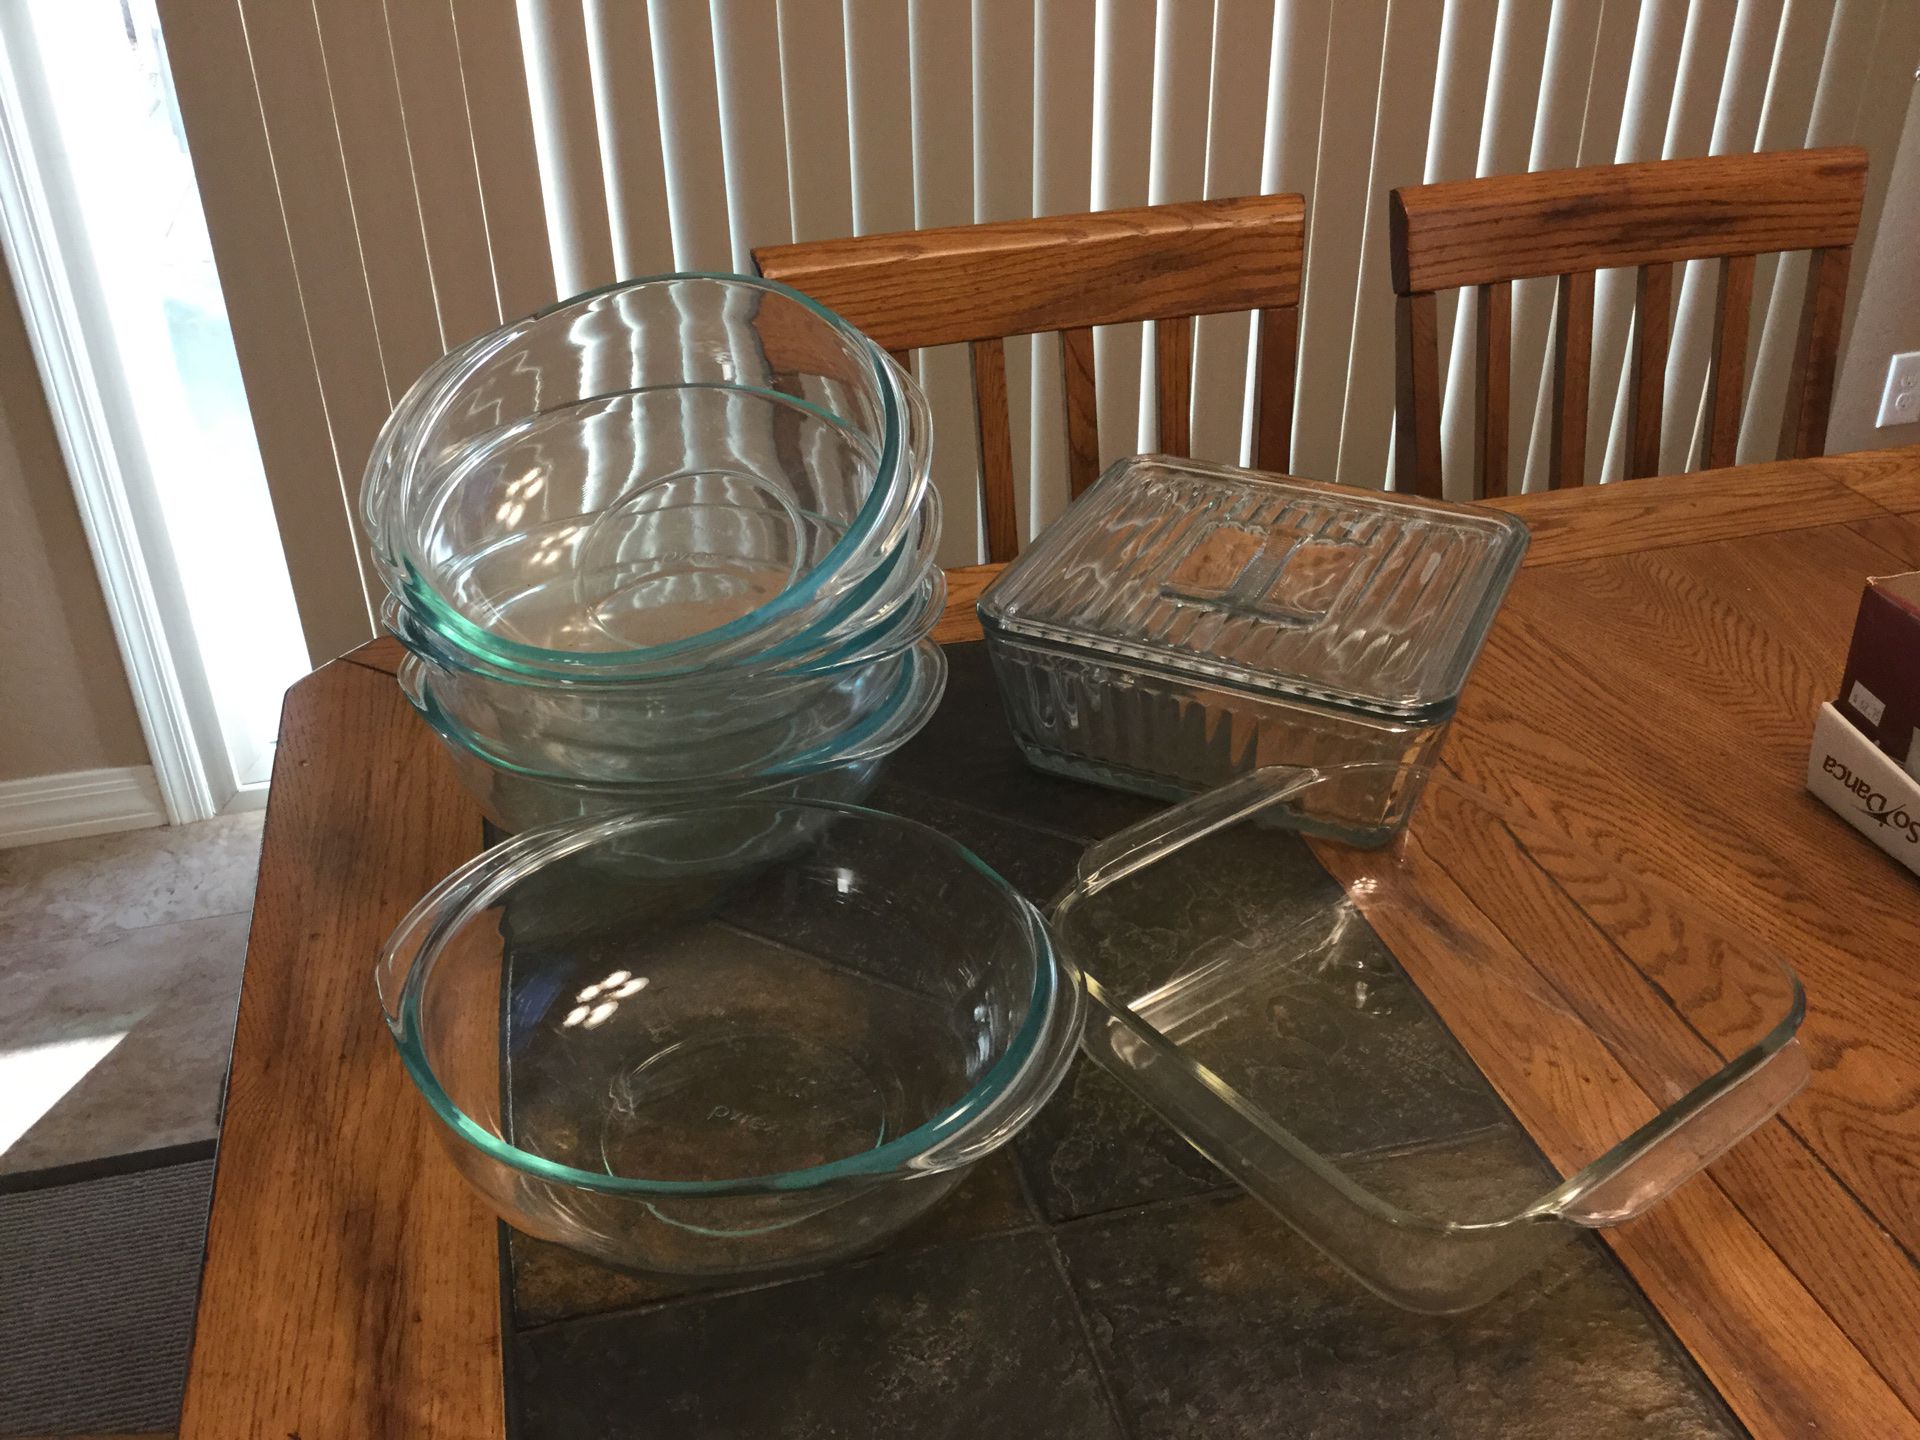 Pyrex glass bowls